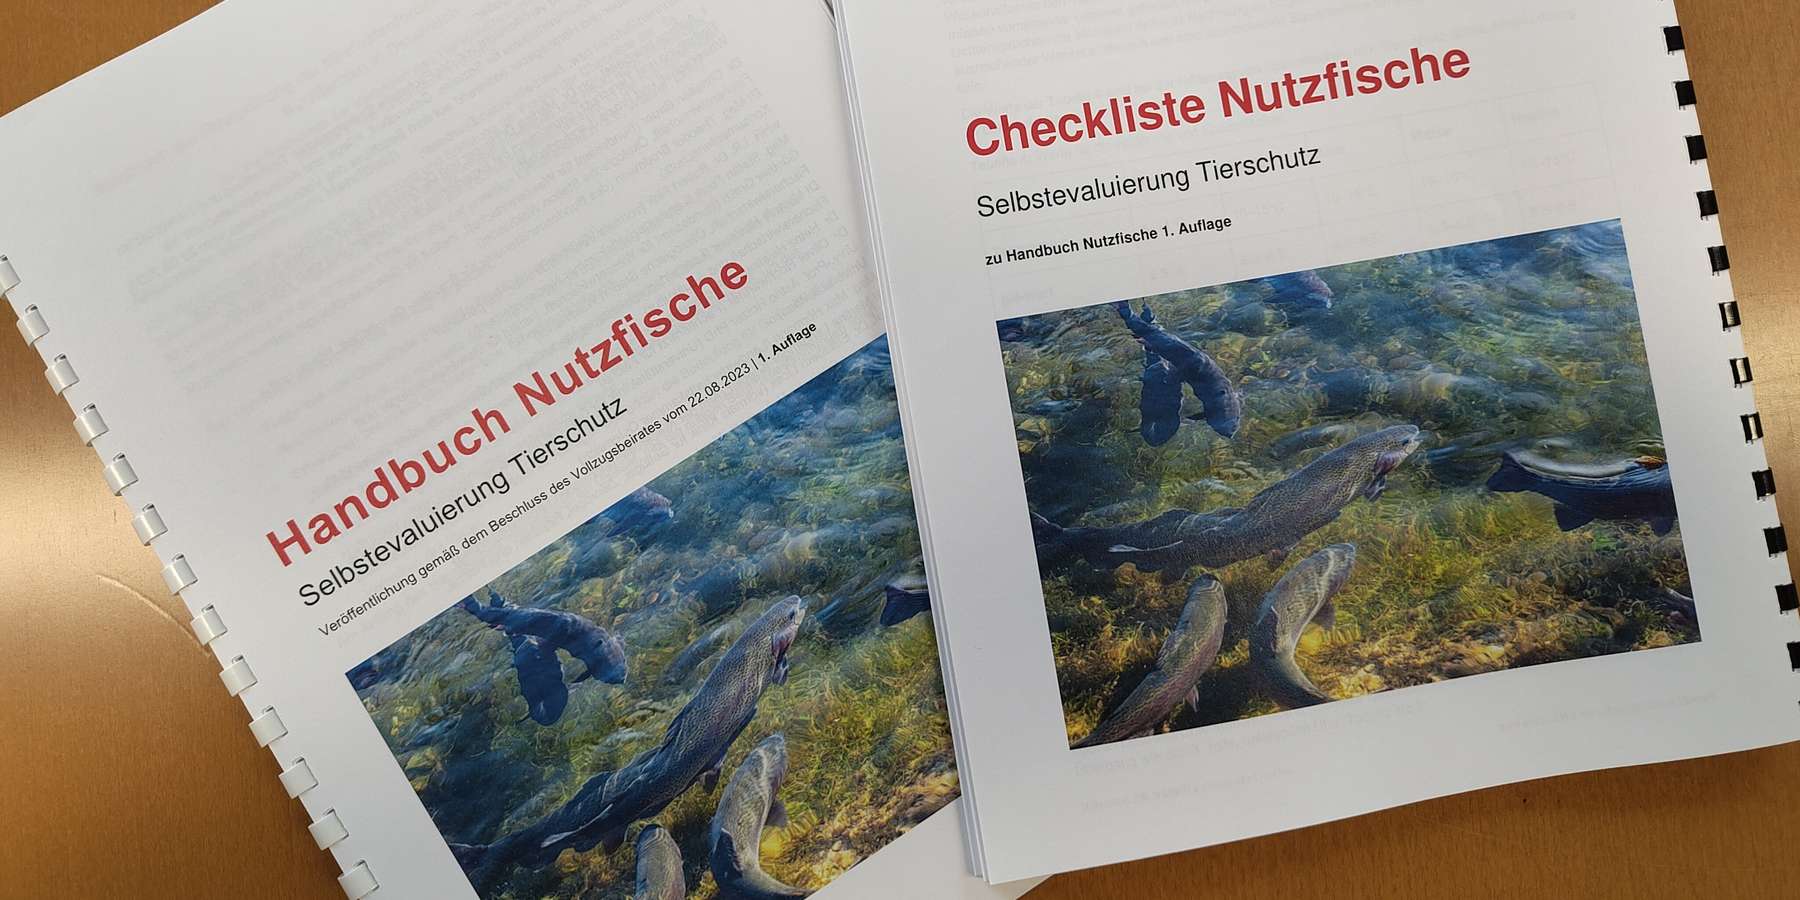 Handbuch und Checkliste Nutzfische (c) Benedikt Berger.jpg